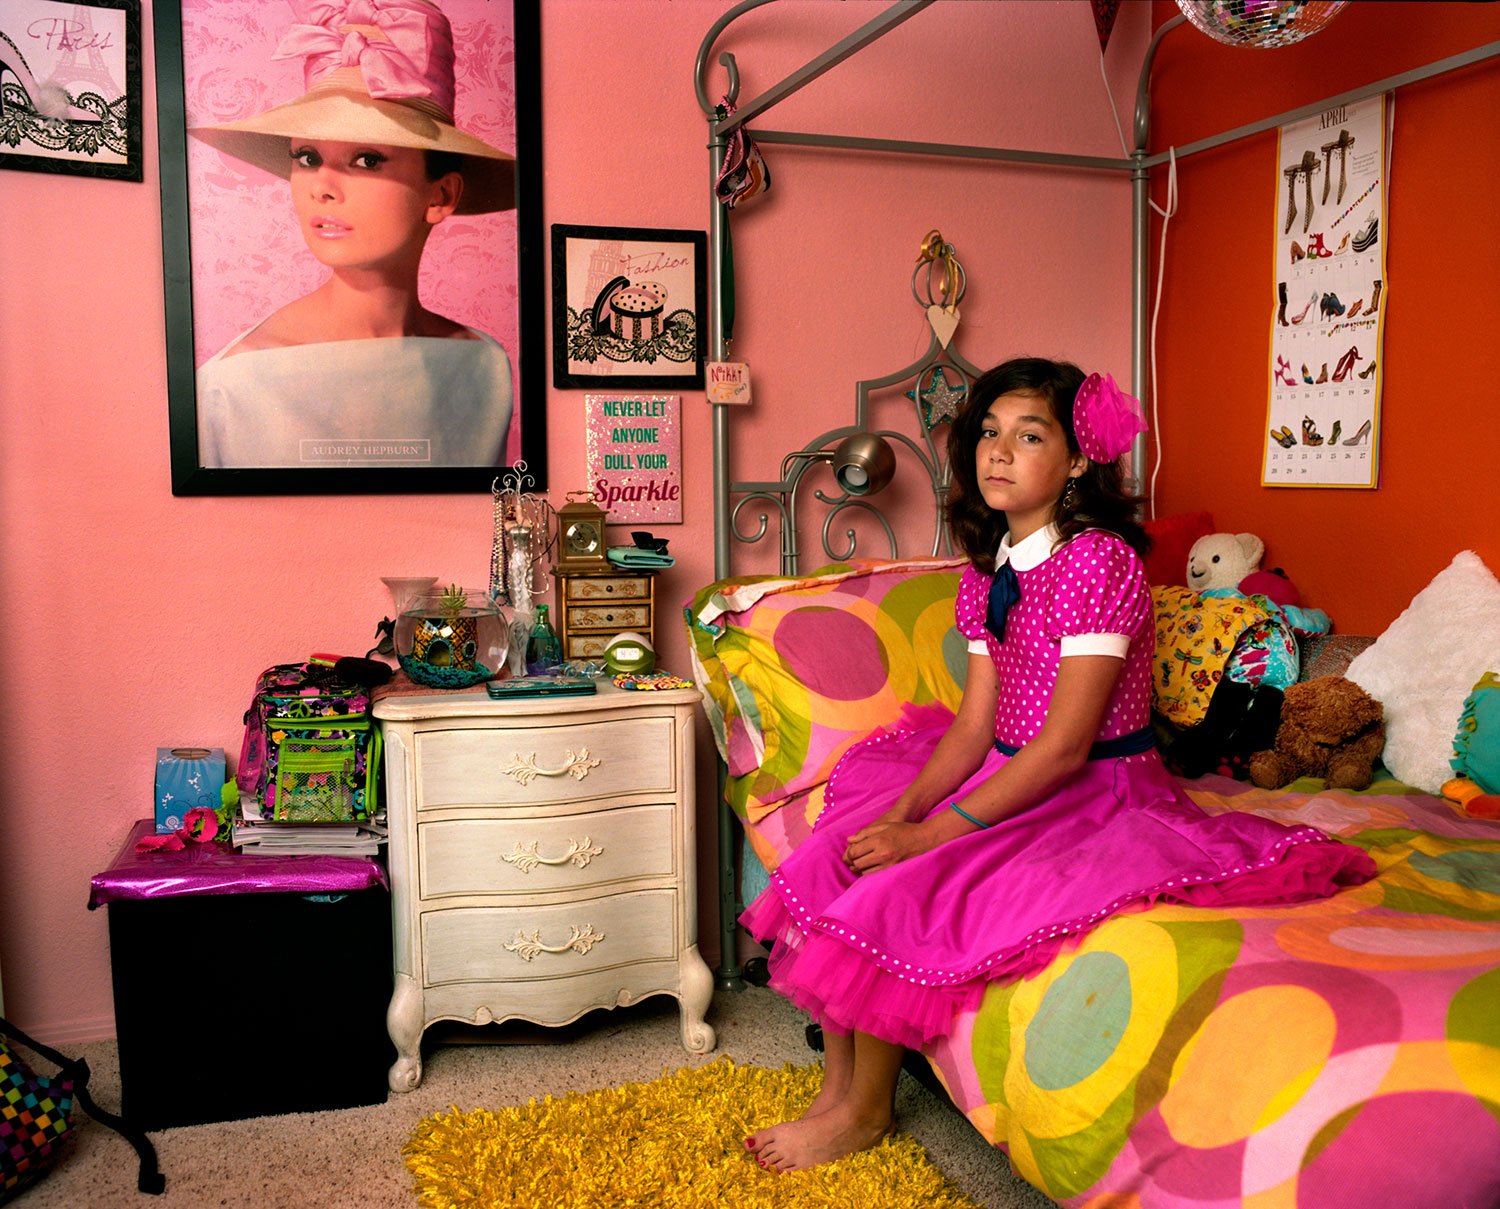 Nikki in her bedroom, California, 2013